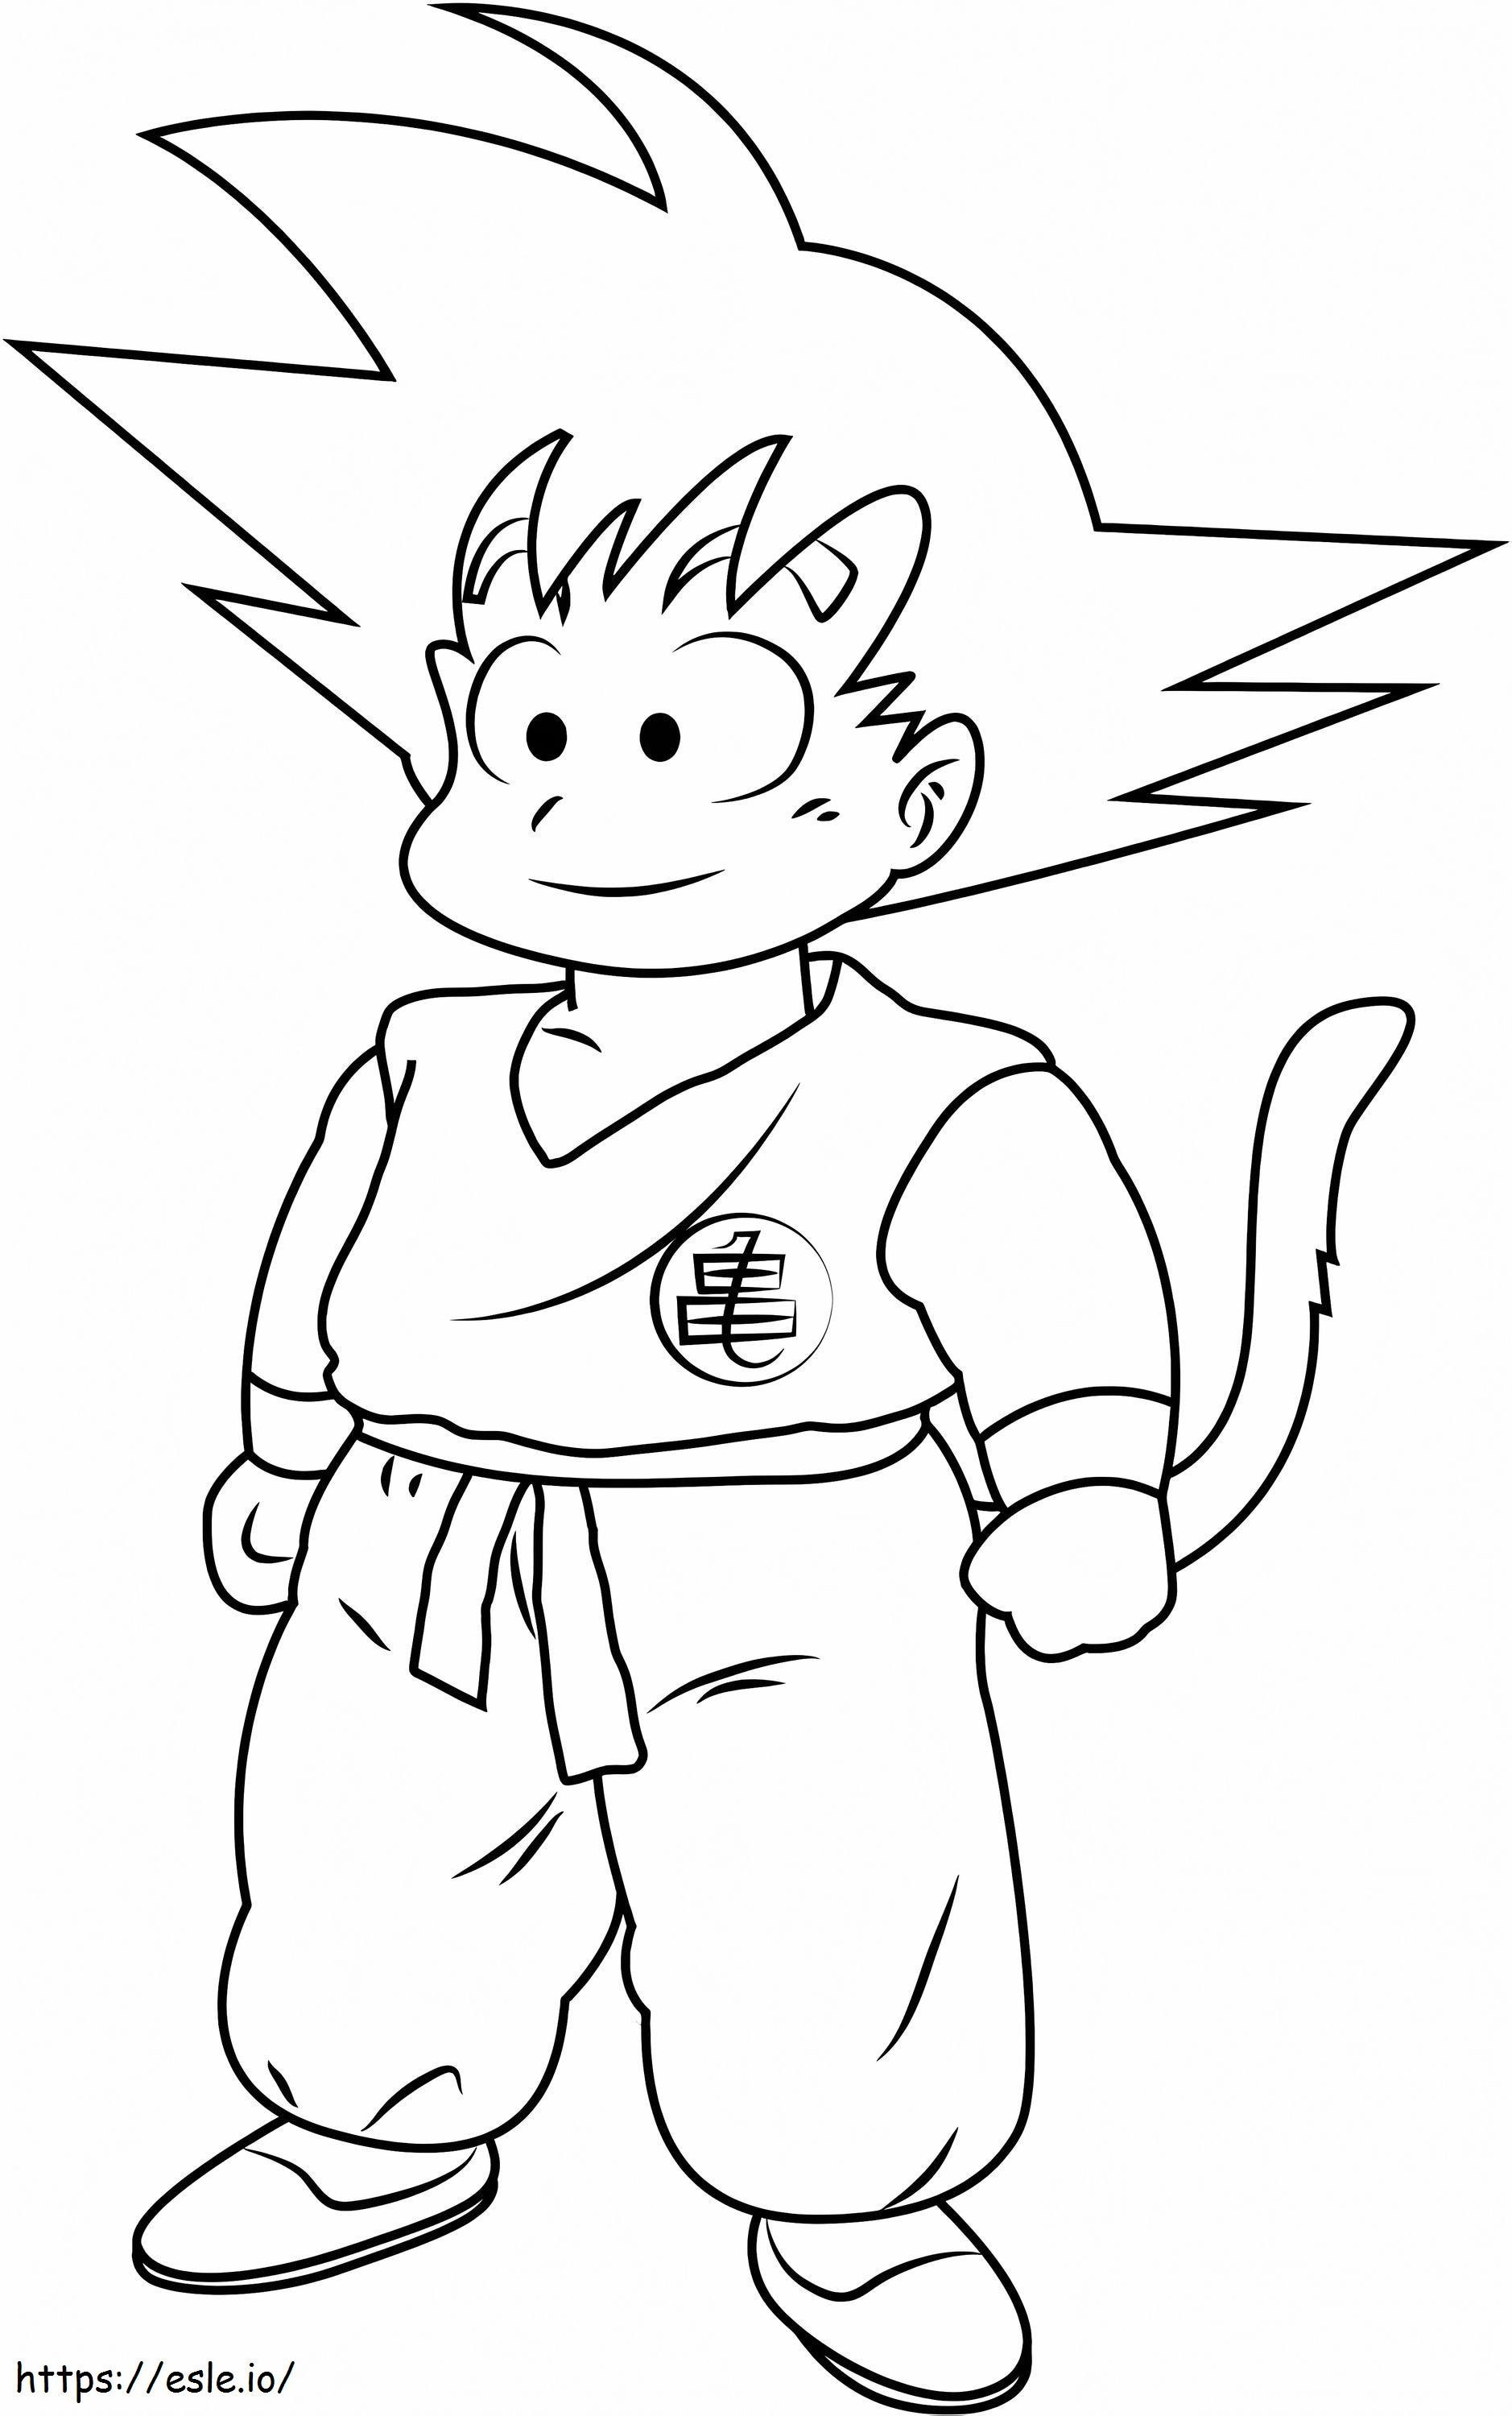 Lindo Nino Goku kolorowanka